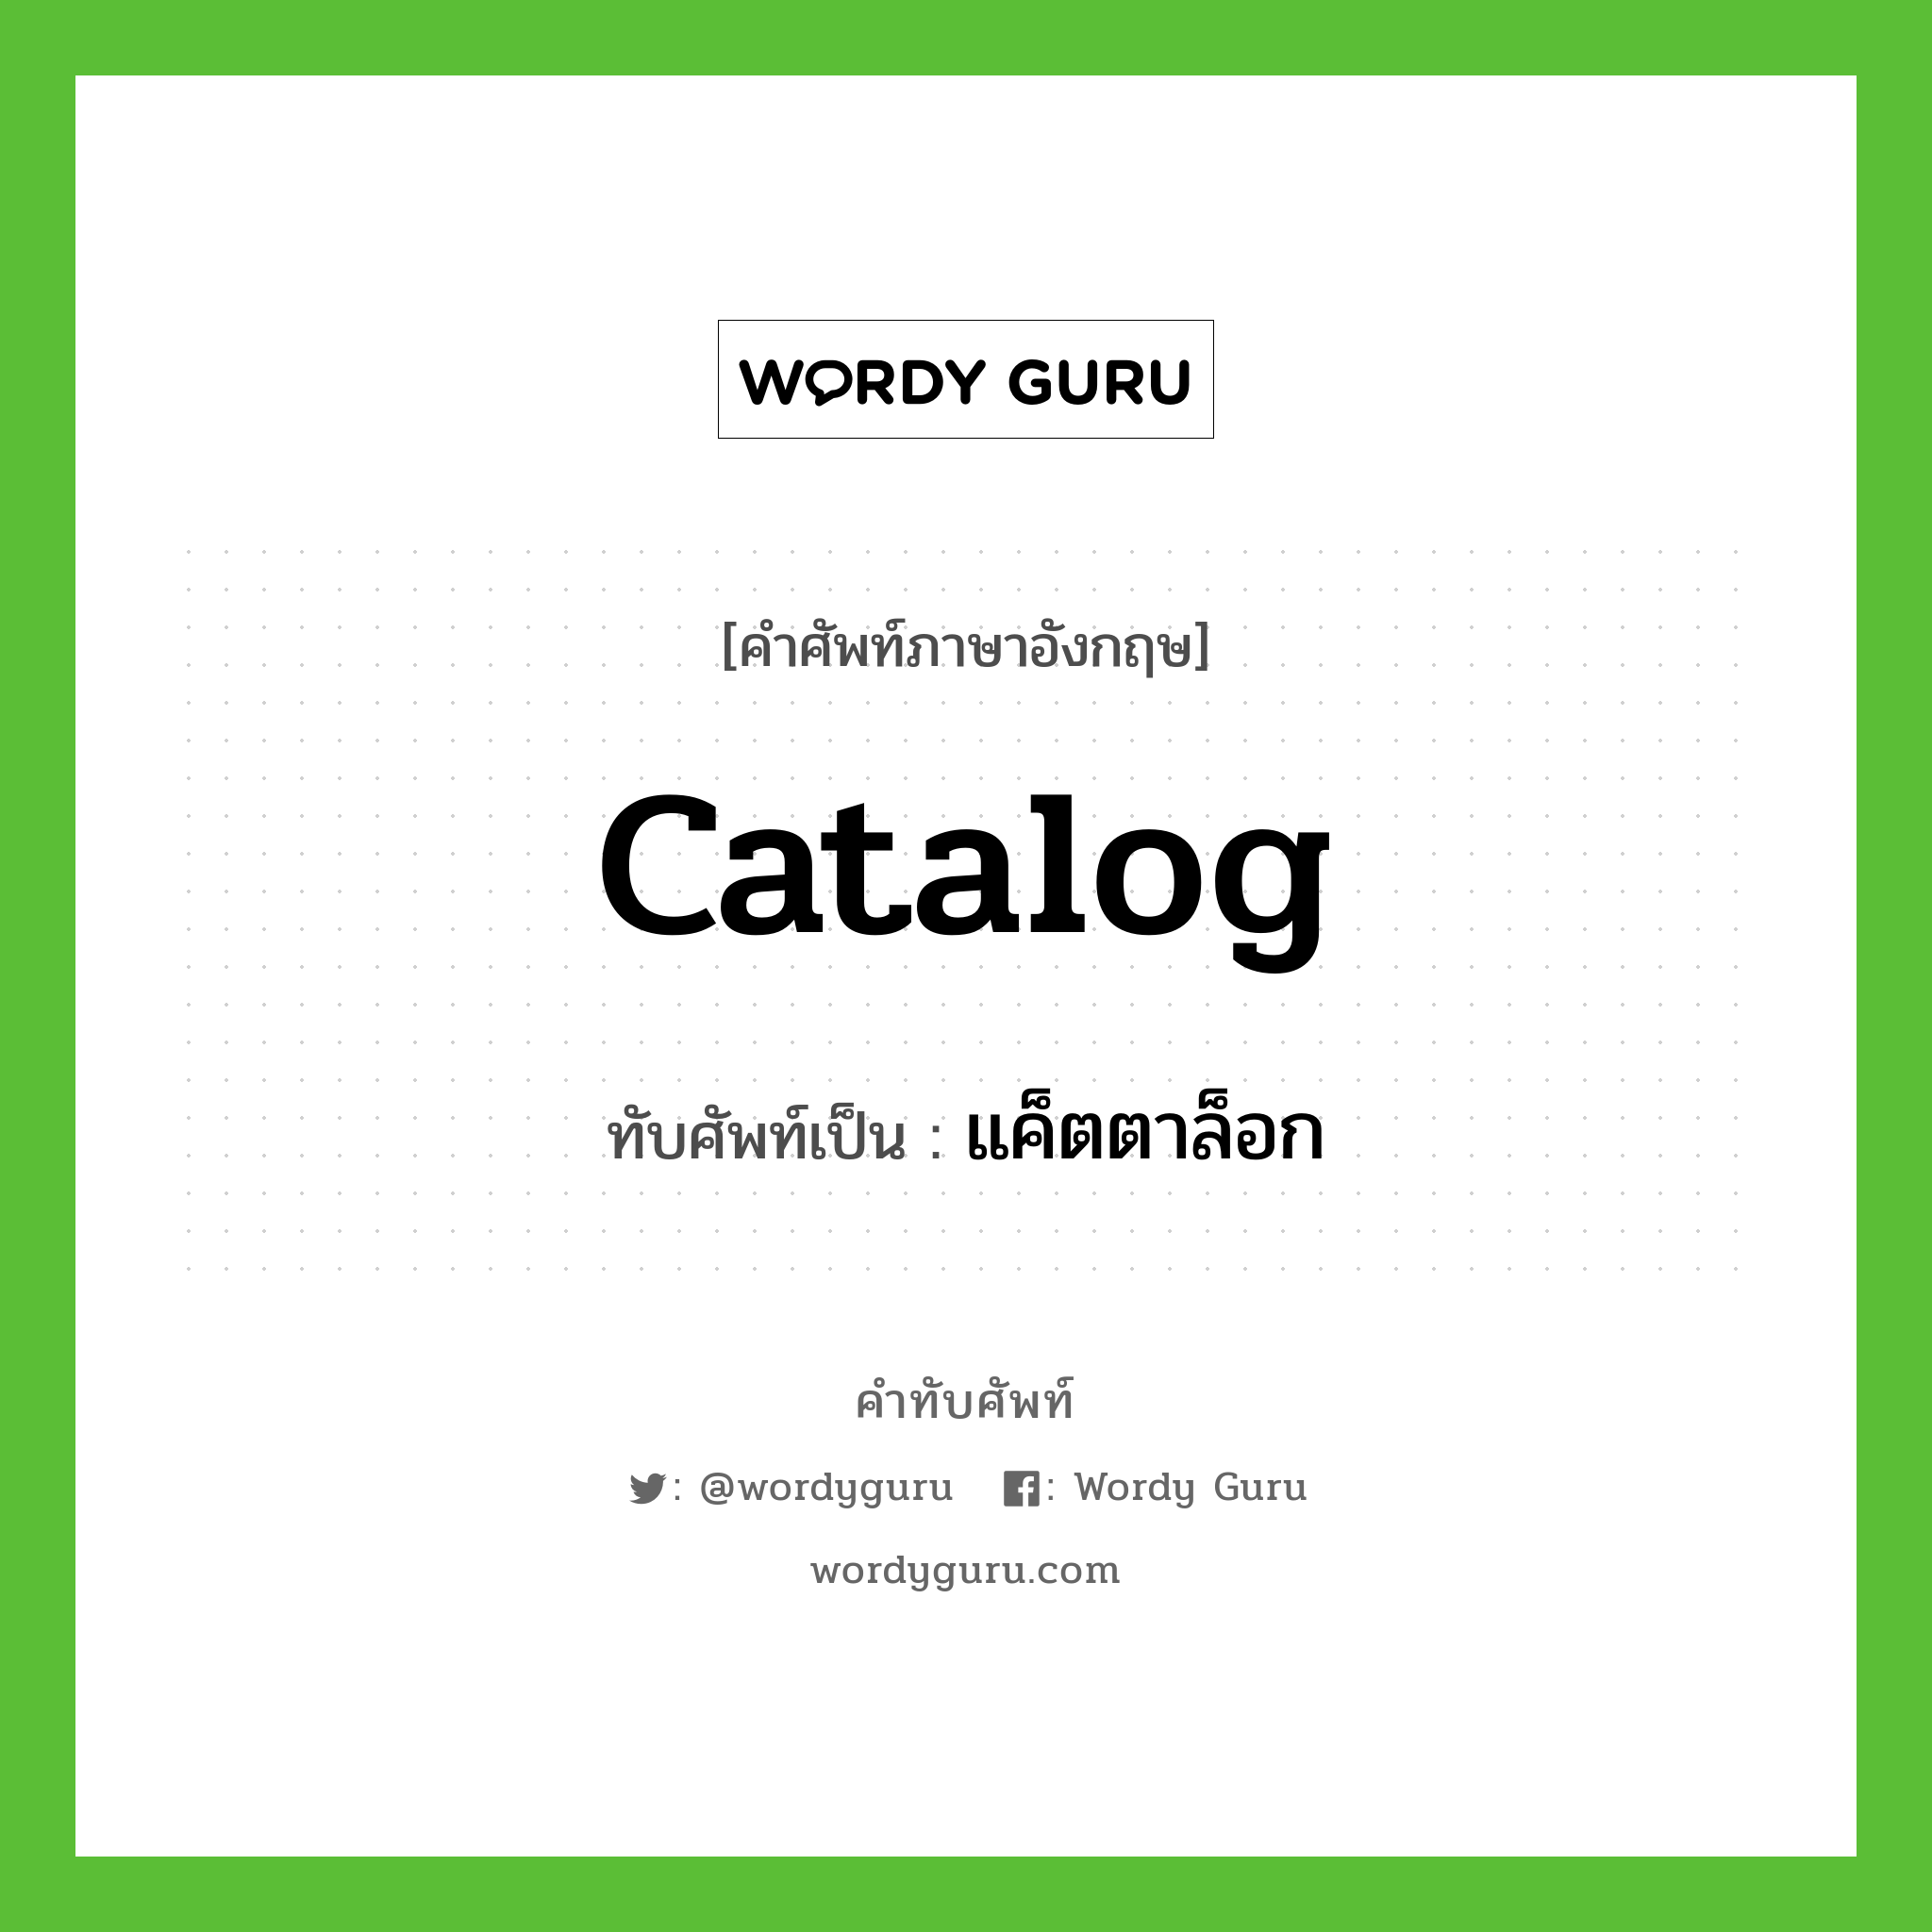 catalog เขียนเป็นคำไทยว่าอะไร?, คำศัพท์ภาษาอังกฤษ catalog ทับศัพท์เป็น แค็ตตาล็อก